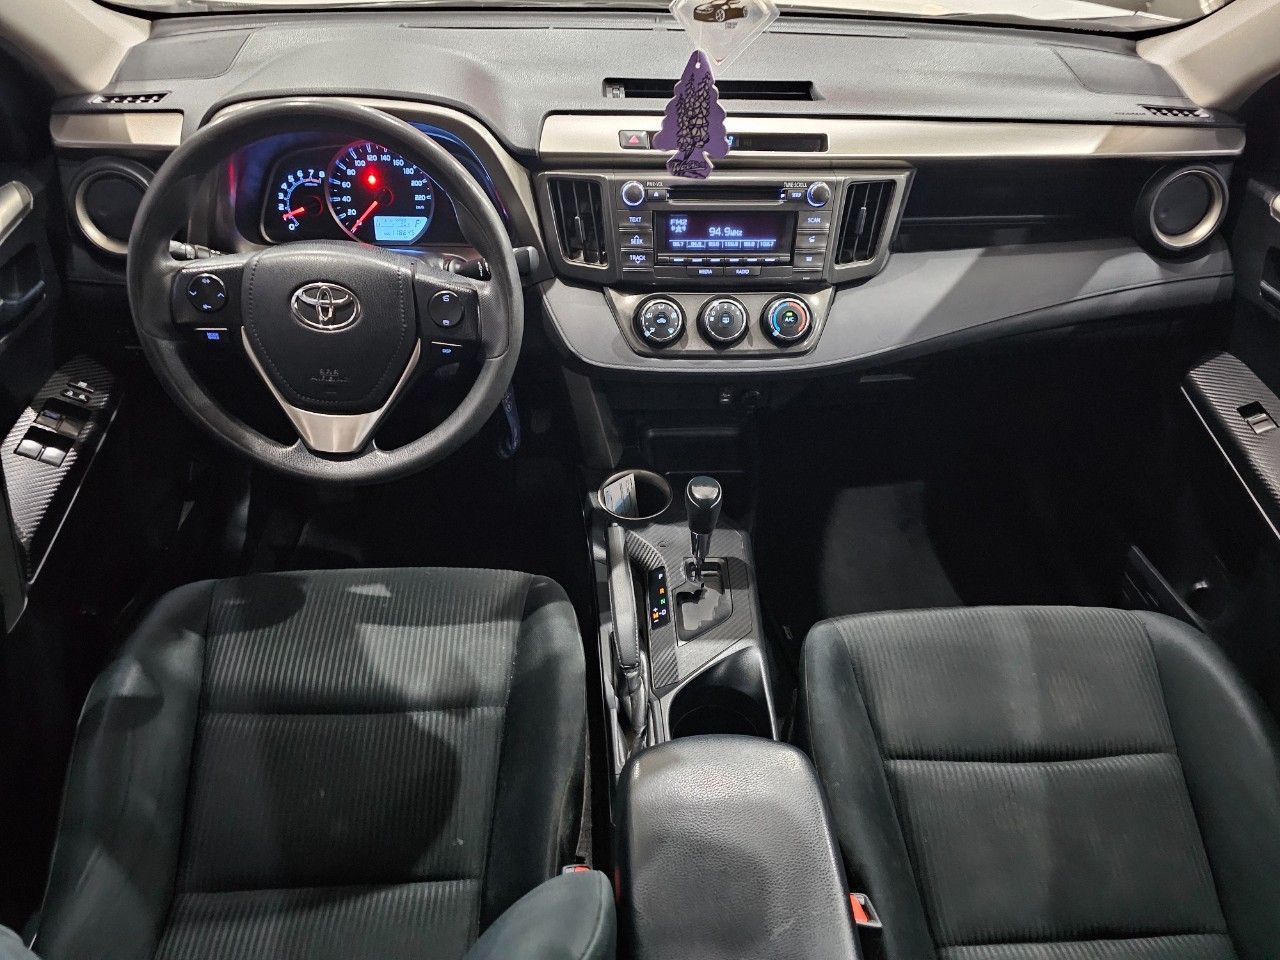 Toyota RAV4 Usado Financiado en Mendoza, deRuedas